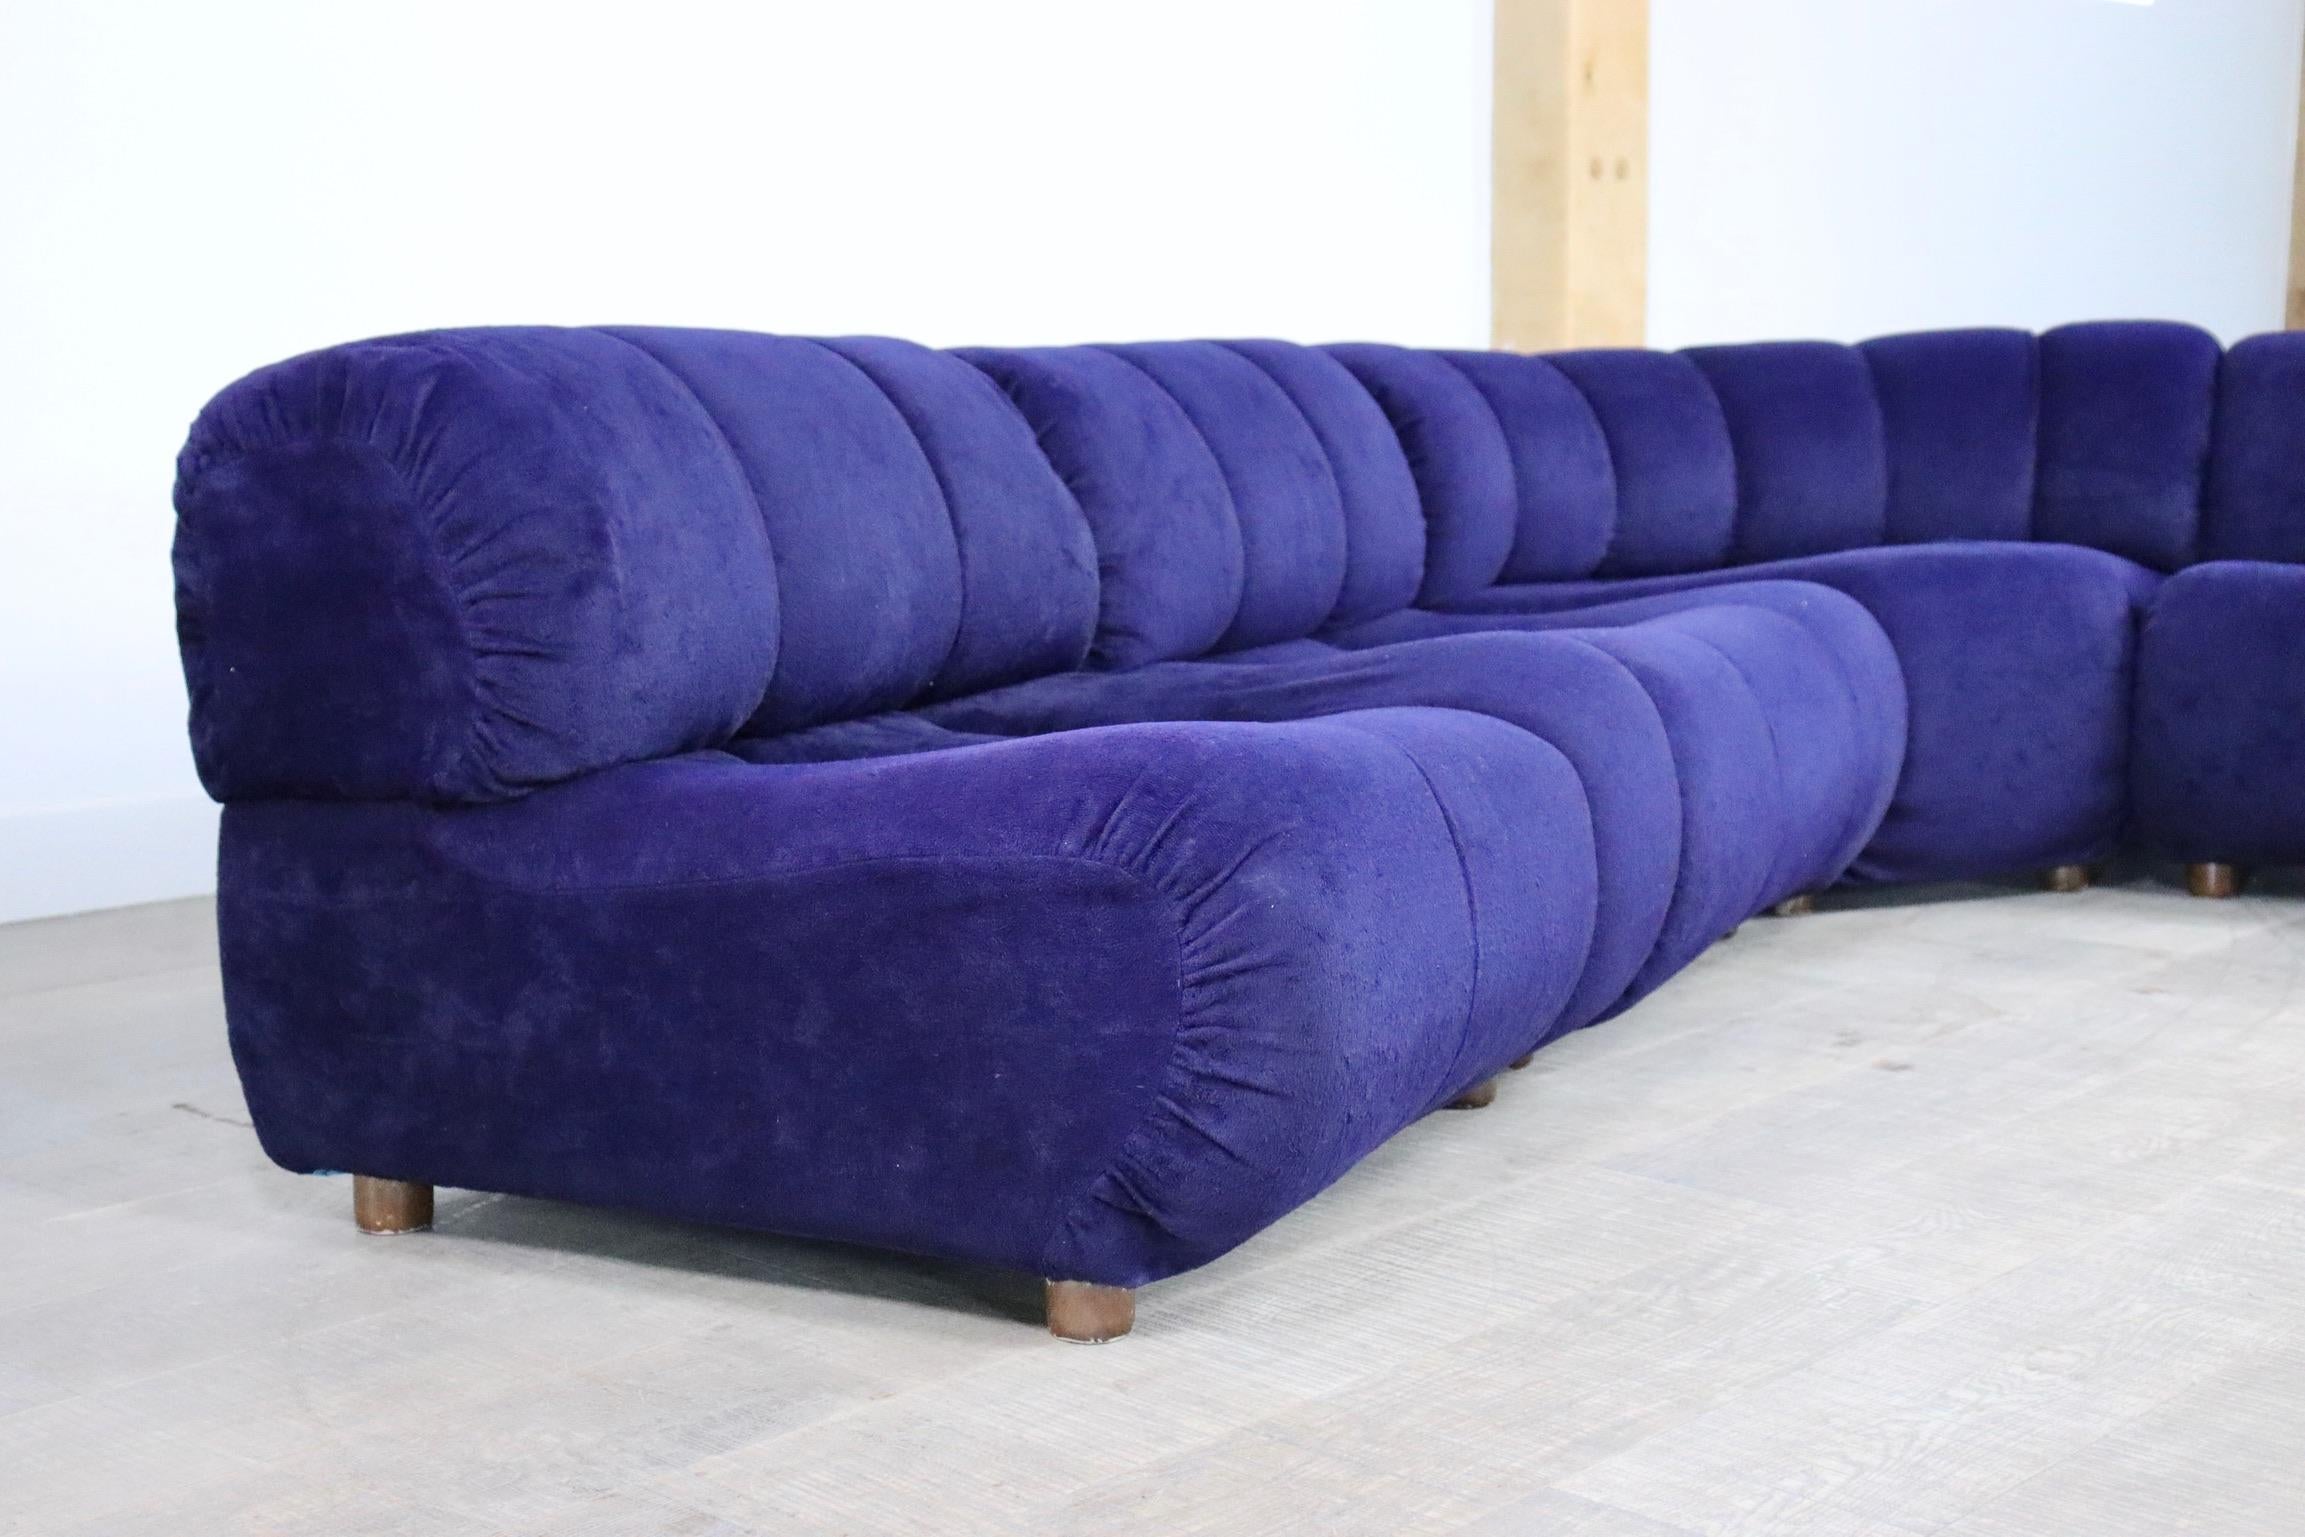 Velvet Sectional Sofa in blue velvet by Giuseppe Munari for Poltrona Munari, Italy, 197